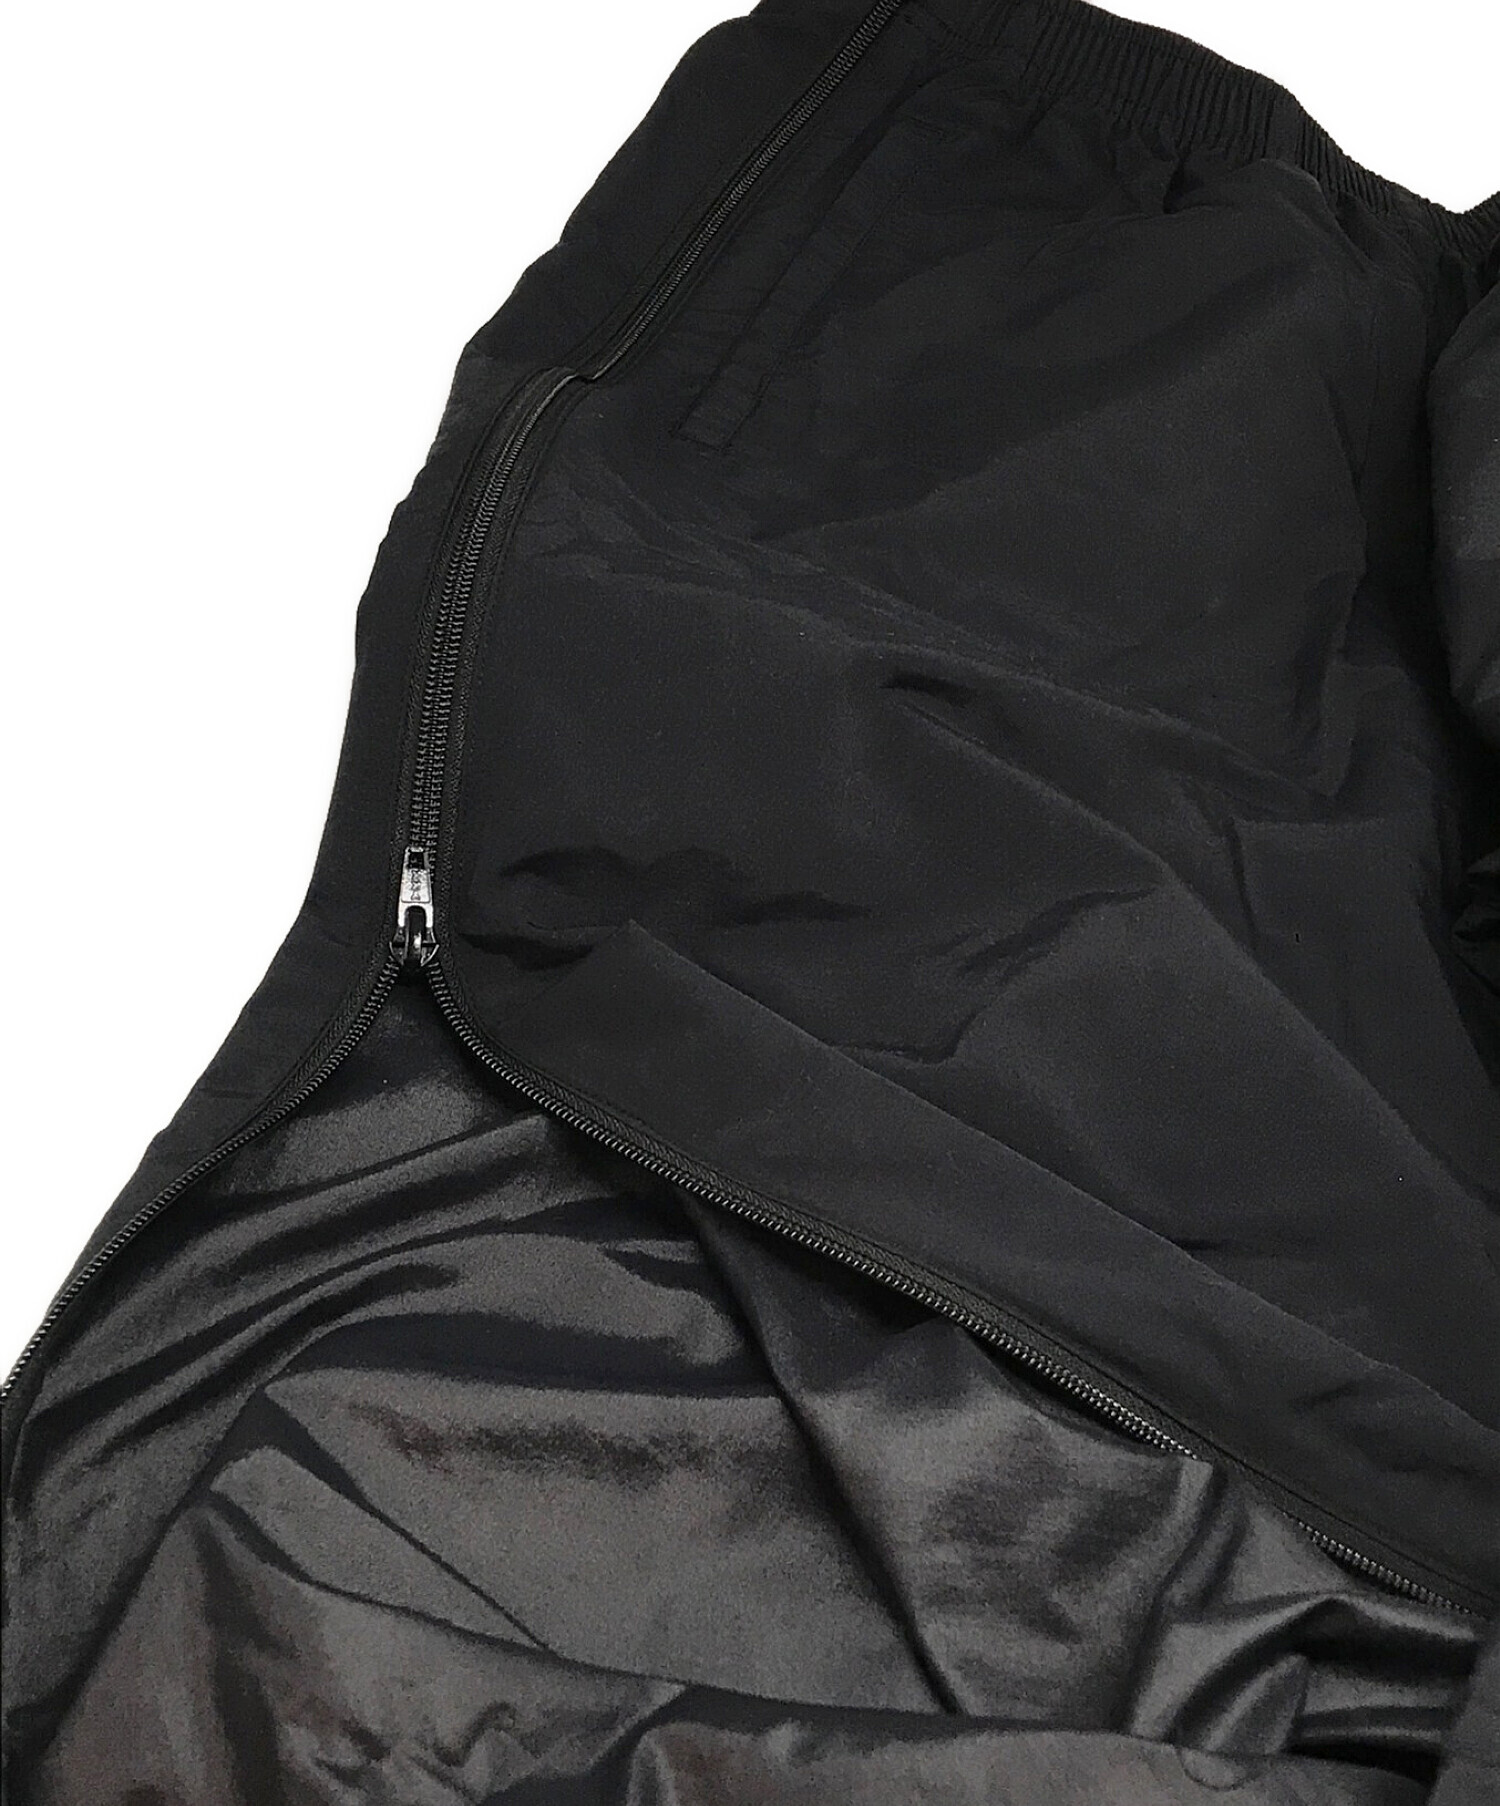 SUPREME (シュプリーム) Full Zip Baggy Warm Up Pant/フル ジップ バギー ワォーム アップ パンツ ブラック  サイズ:SIZE M